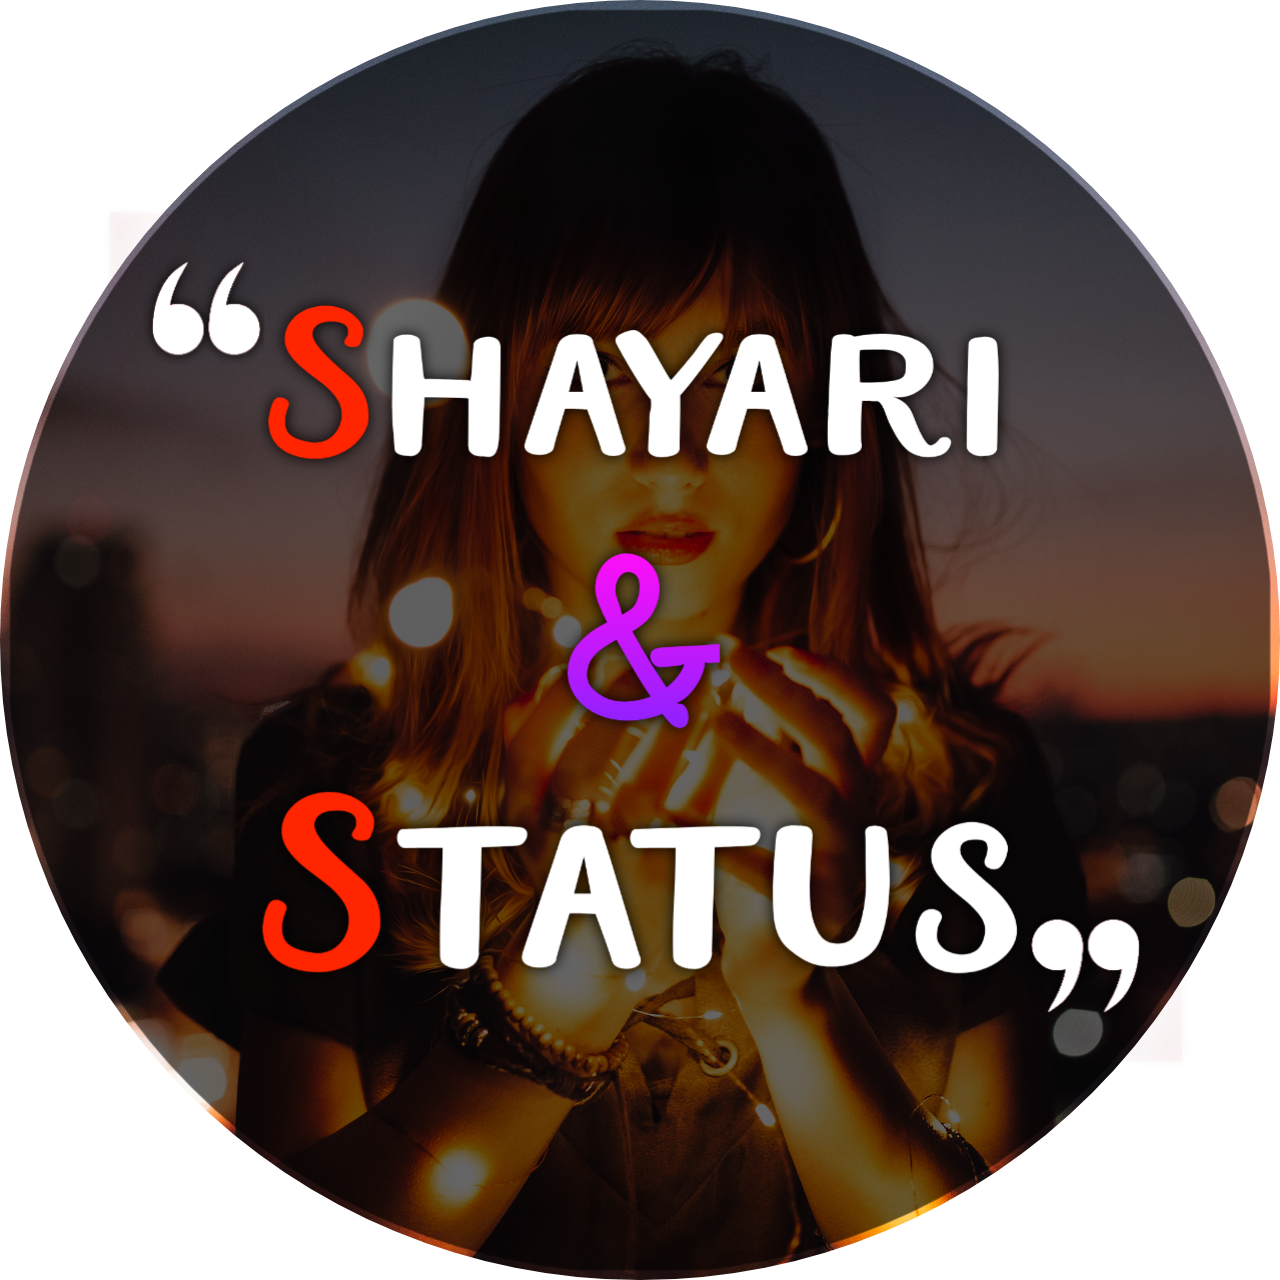 Shayari & Quotes